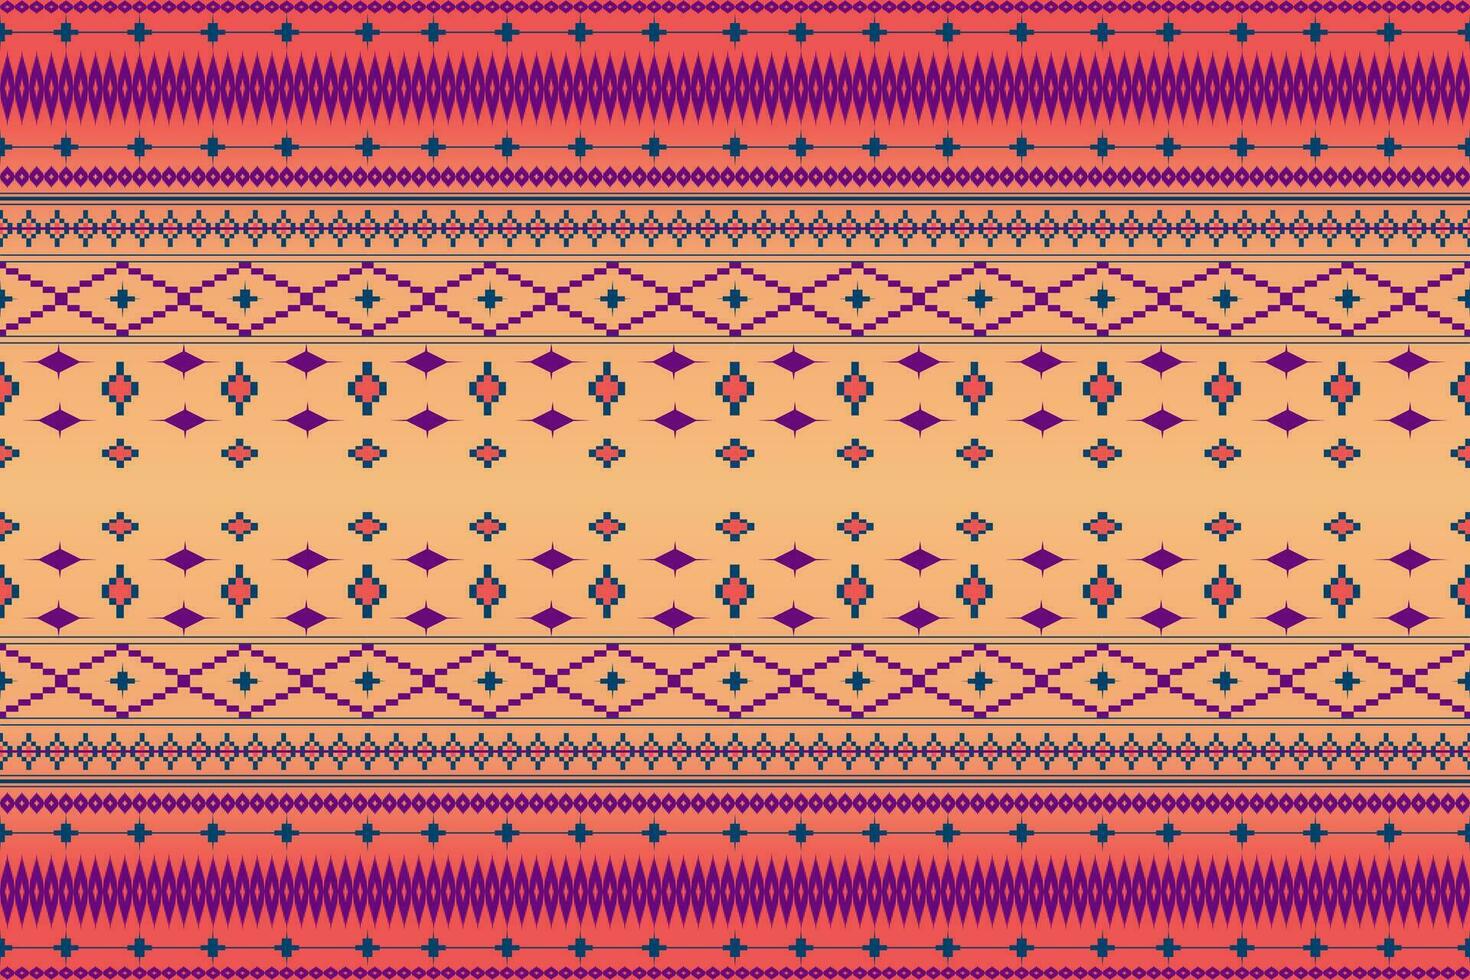 geometrico patchwork etnico modello vettore per tribale boho carta da parati,avvolgimento,moda,tappeto,abbigliamento,maglieria,batik,illustrazione.etnico astratto ikat.